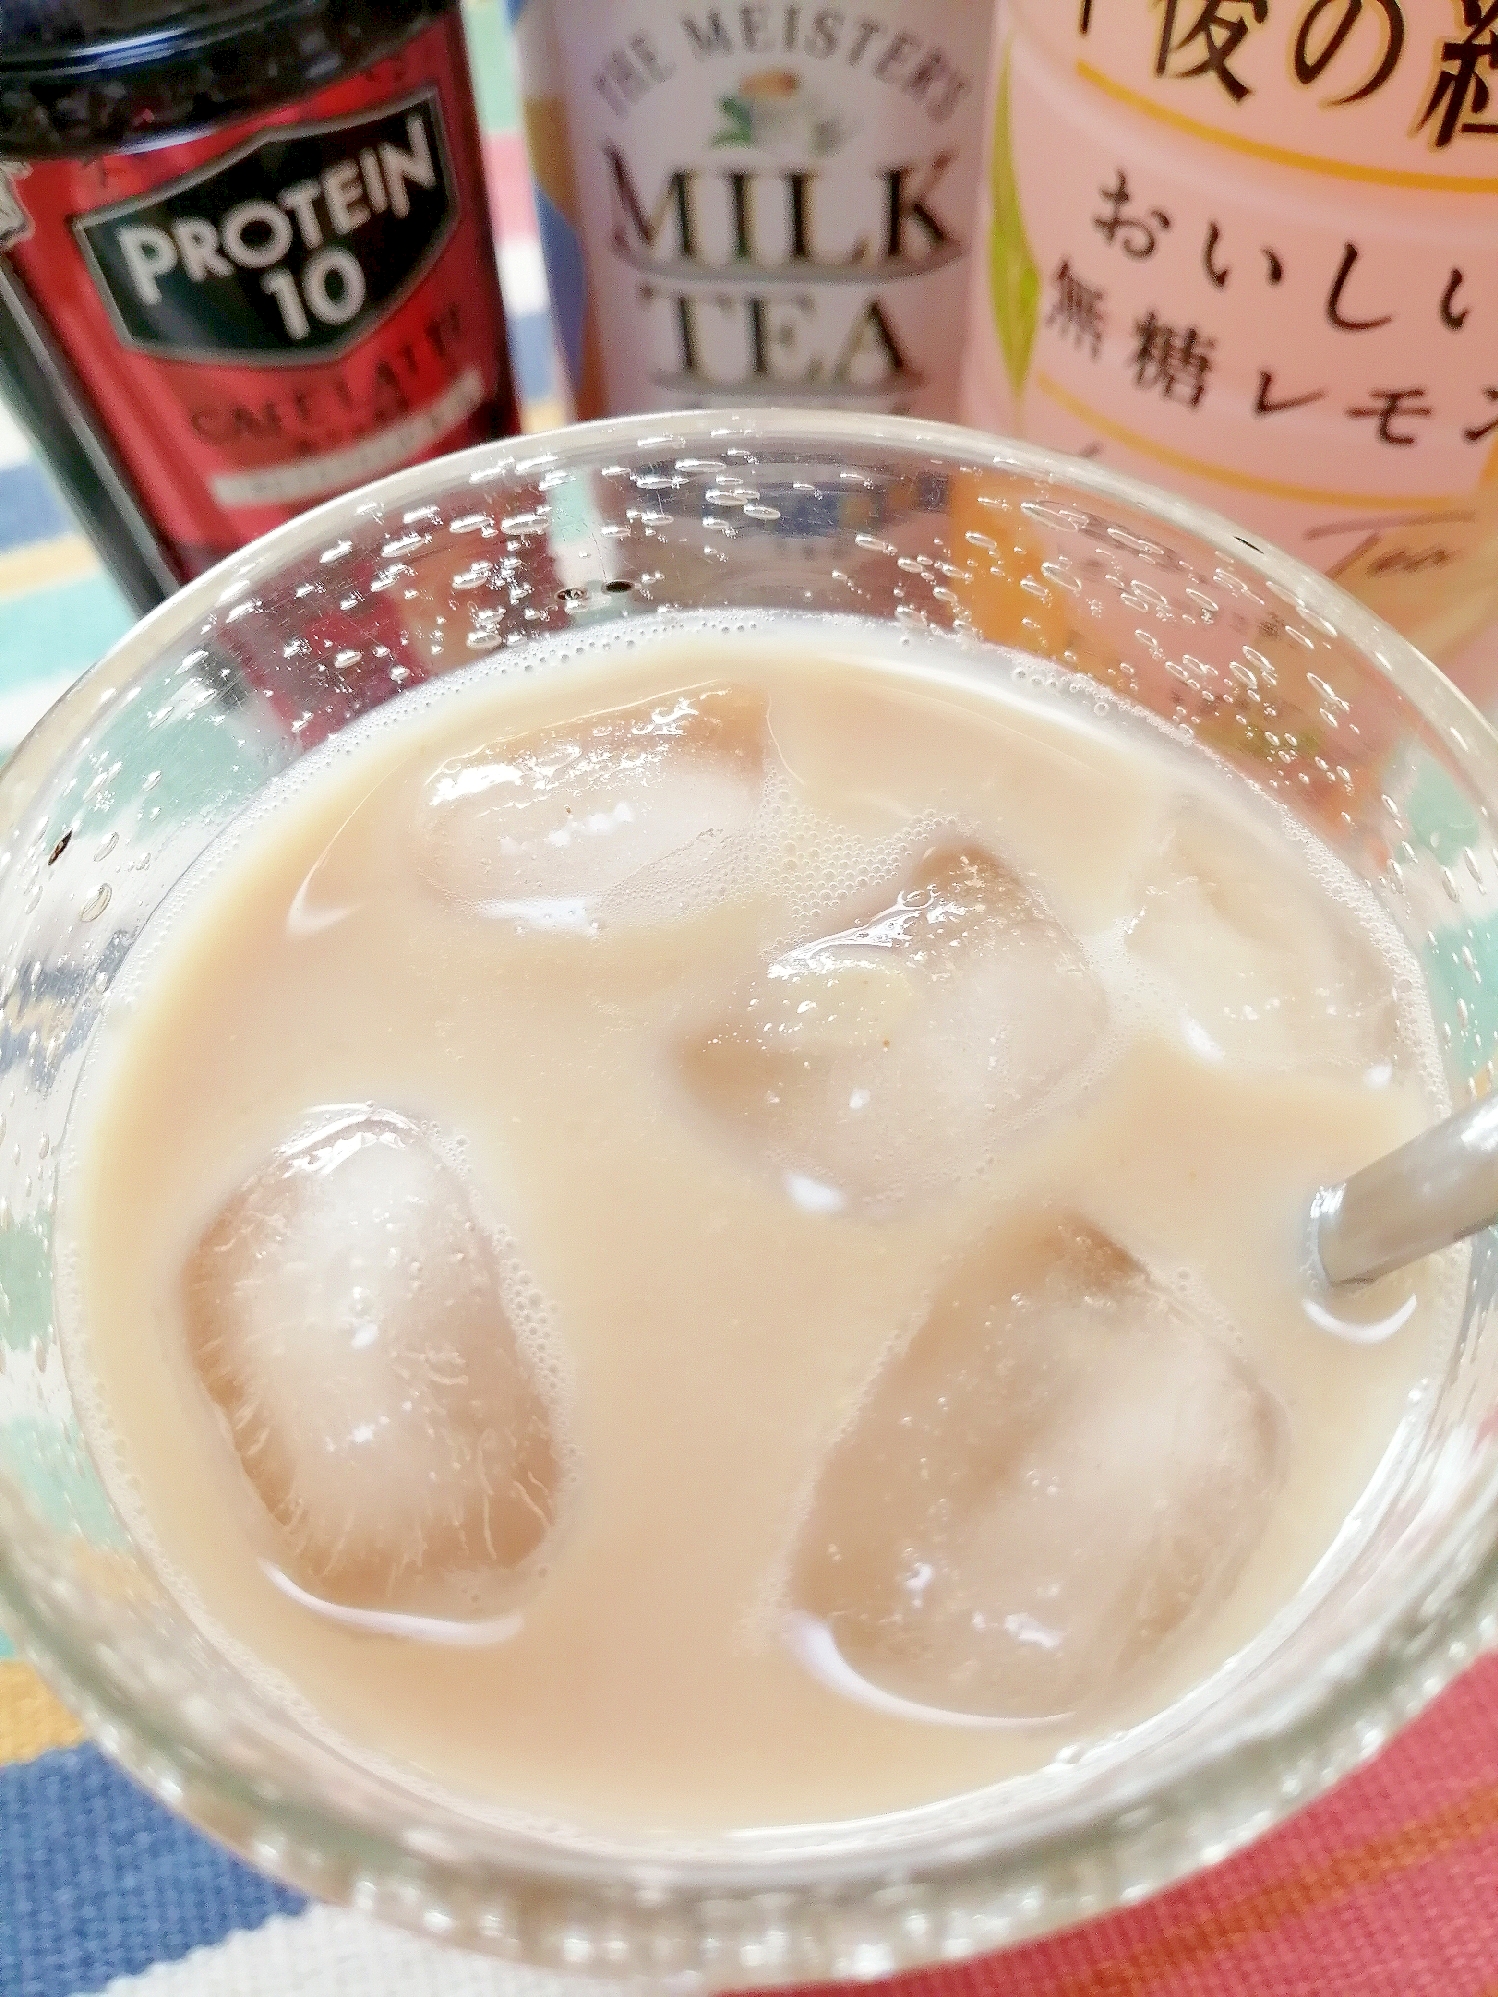 アイス☆プロテインレモンミルクティーカフェラテ♪